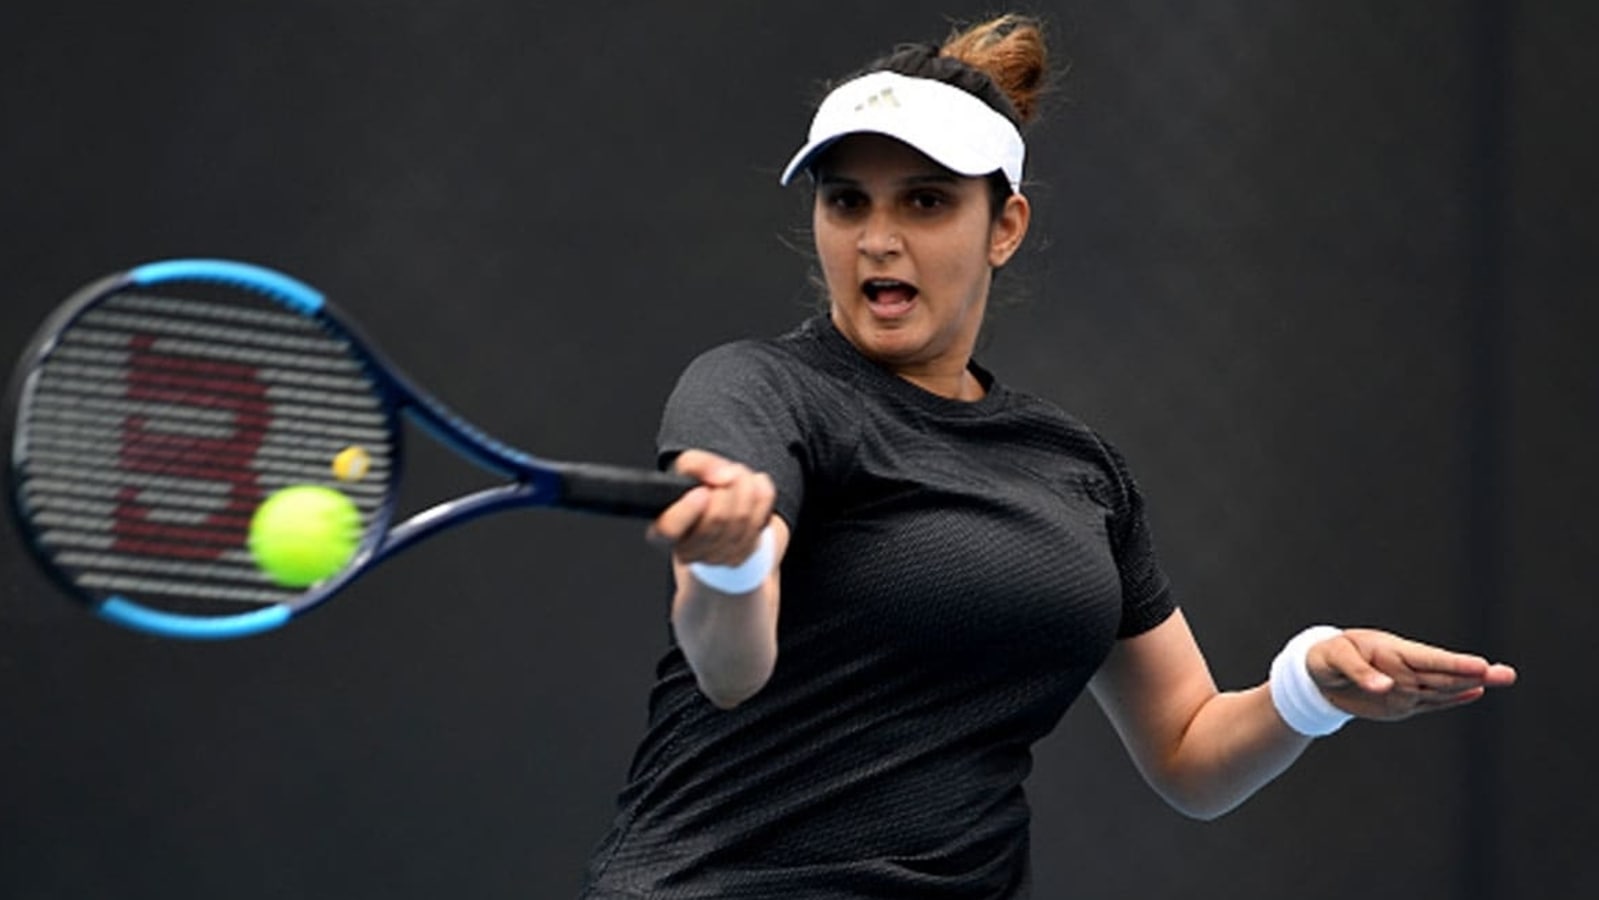 Sania Mirza Ka Video Bf - Sania Mirza to retire at Dubai meet next month | Tennis News - Hindustan  Times